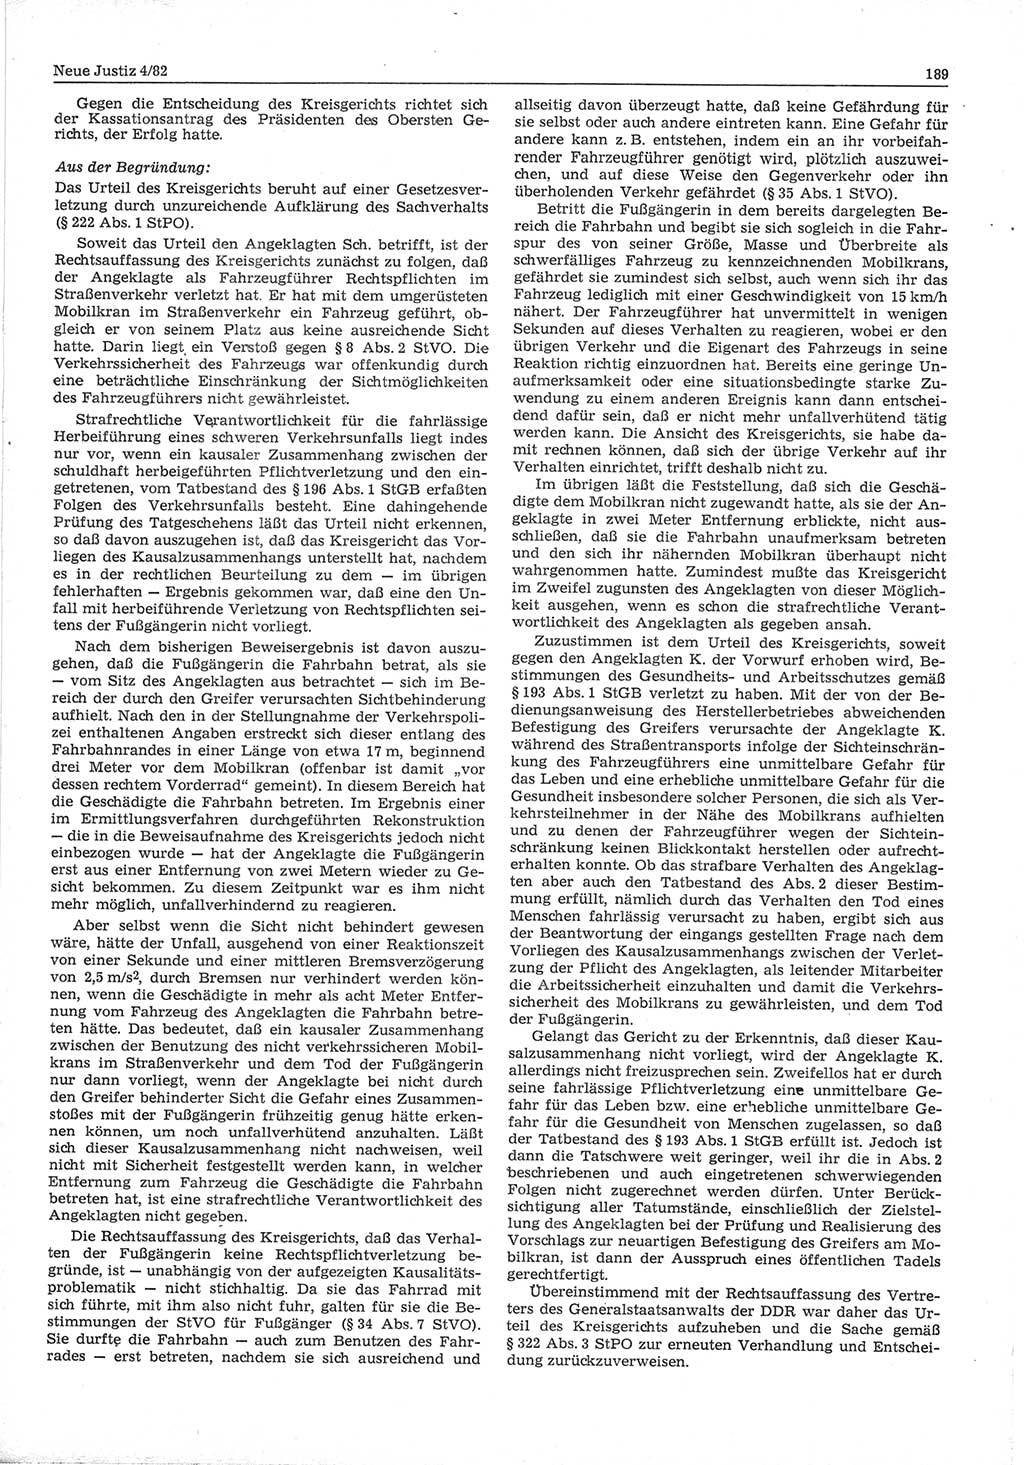 Neue Justiz (NJ), Zeitschrift für sozialistisches Recht und Gesetzlichkeit [Deutsche Demokratische Republik (DDR)], 36. Jahrgang 1982, Seite 189 (NJ DDR 1982, S. 189)